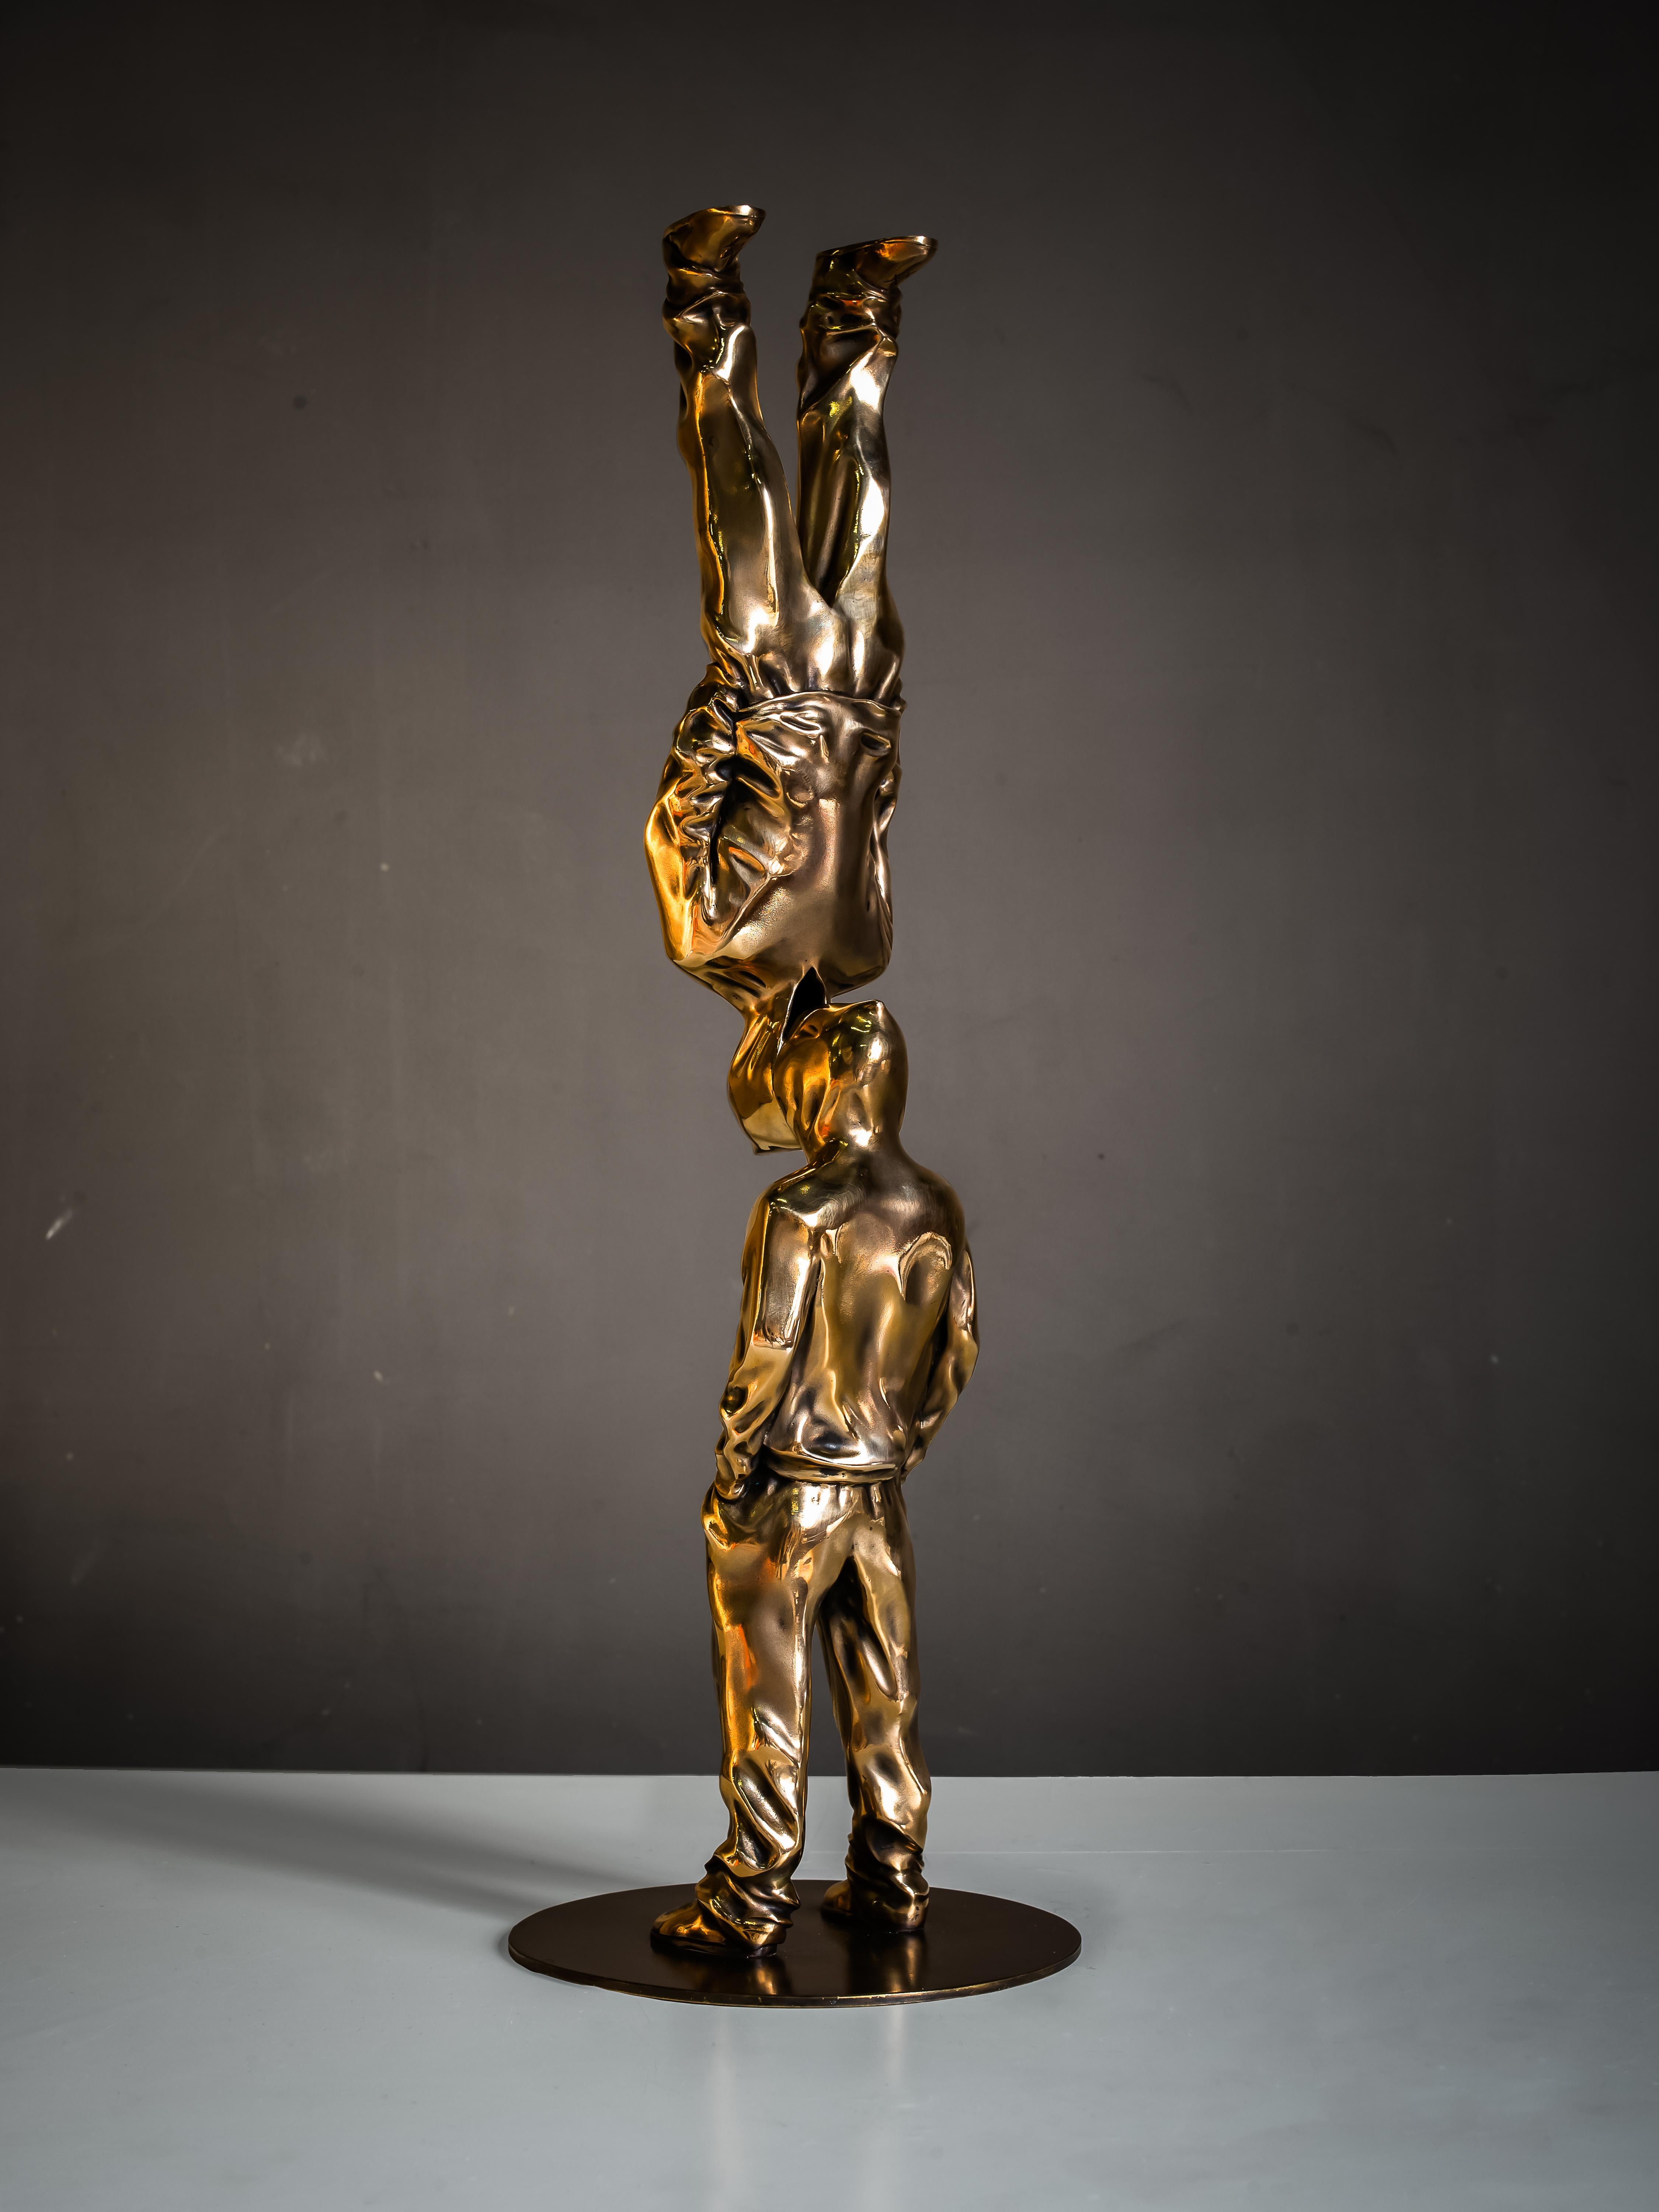 „Up Side Down“ Bronzeskulptur Auflage 3/8 von Huang Yulong

Up Side Down
2018
Bronze-Skulptur 
24" × 4" × 4" in
60 × 10 × 10 cm
Auflage von 3/8

ÜBER DEN KÜNSTLER
Huang Yulong wurde 1983 in der Provinz Anhui, China, geboren. Im Jahr 2007 schloss er